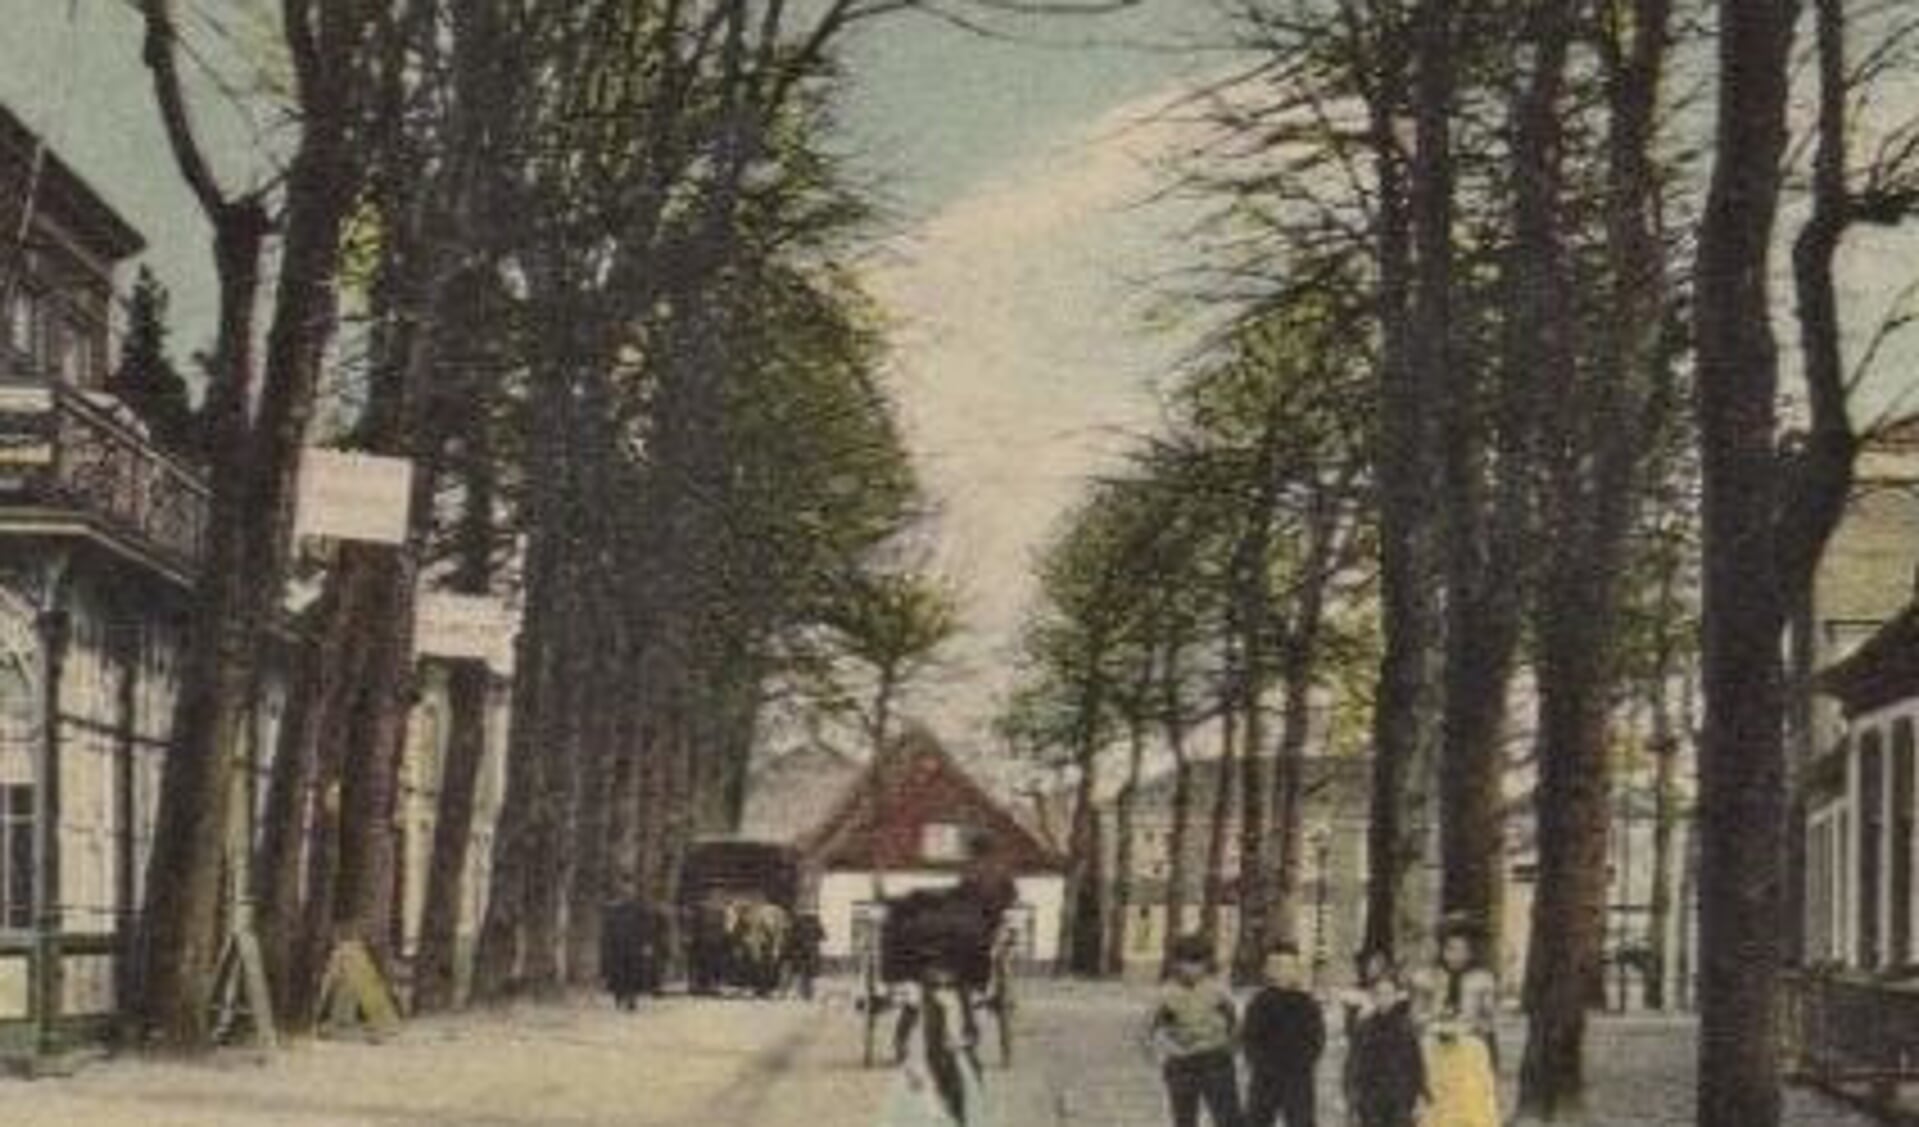 Het witte gebouw is restaurant De Oude Heere, daarnaast foto Engel. Deze ansichtkaart is van vóór 1909.